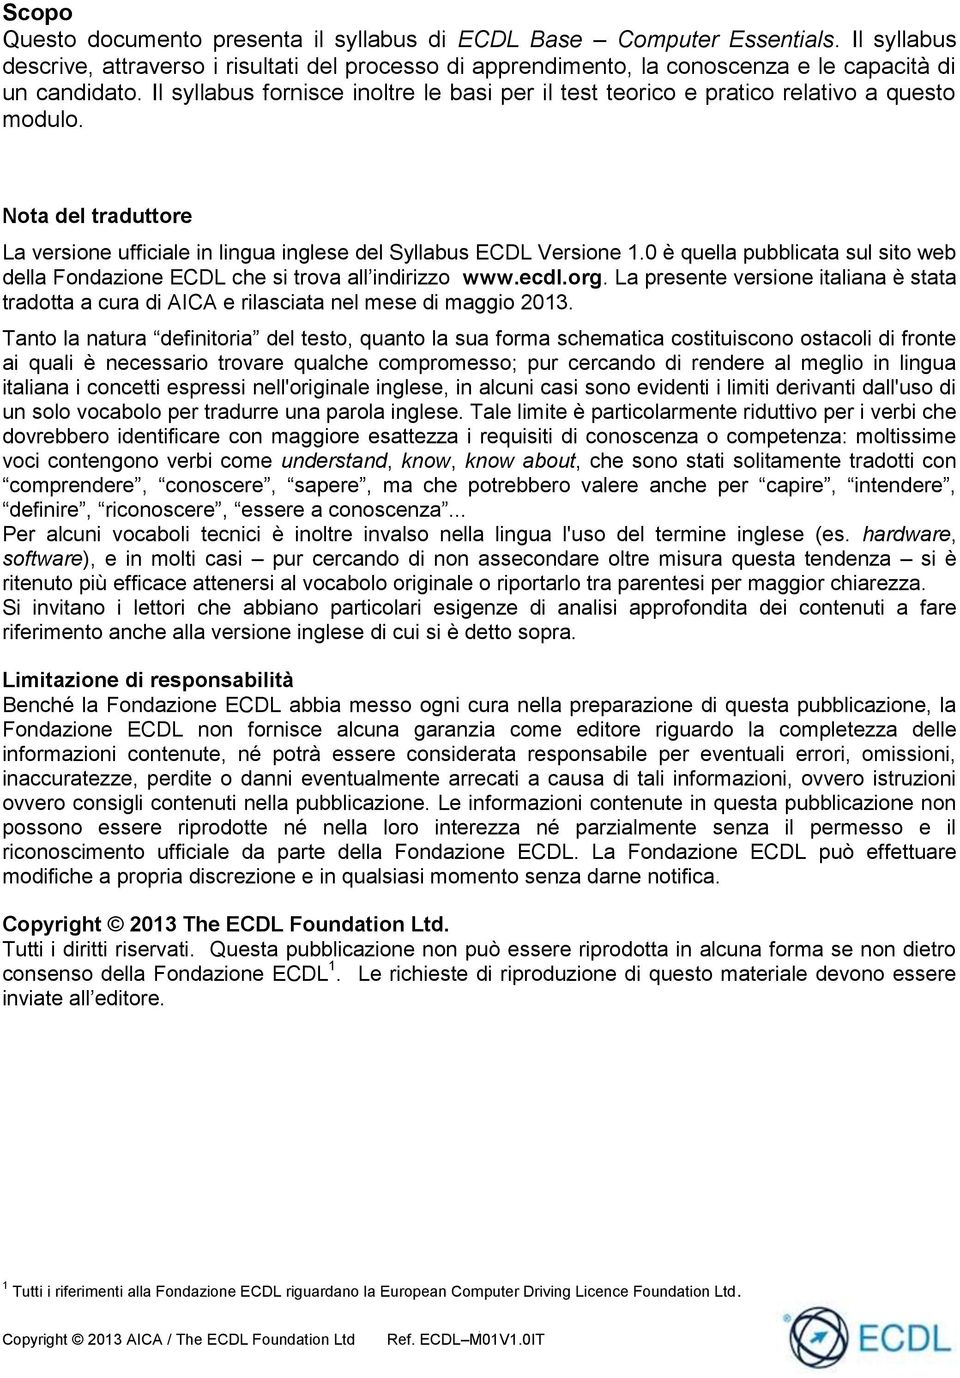 0 è quella pubblicata sul sito web della Fondazione ECDL che si trova all indirizzo www.ecdl.org. La presente versione italiana è stata tradotta a cura di AICA e rilasciata nel mese di maggio 2013.